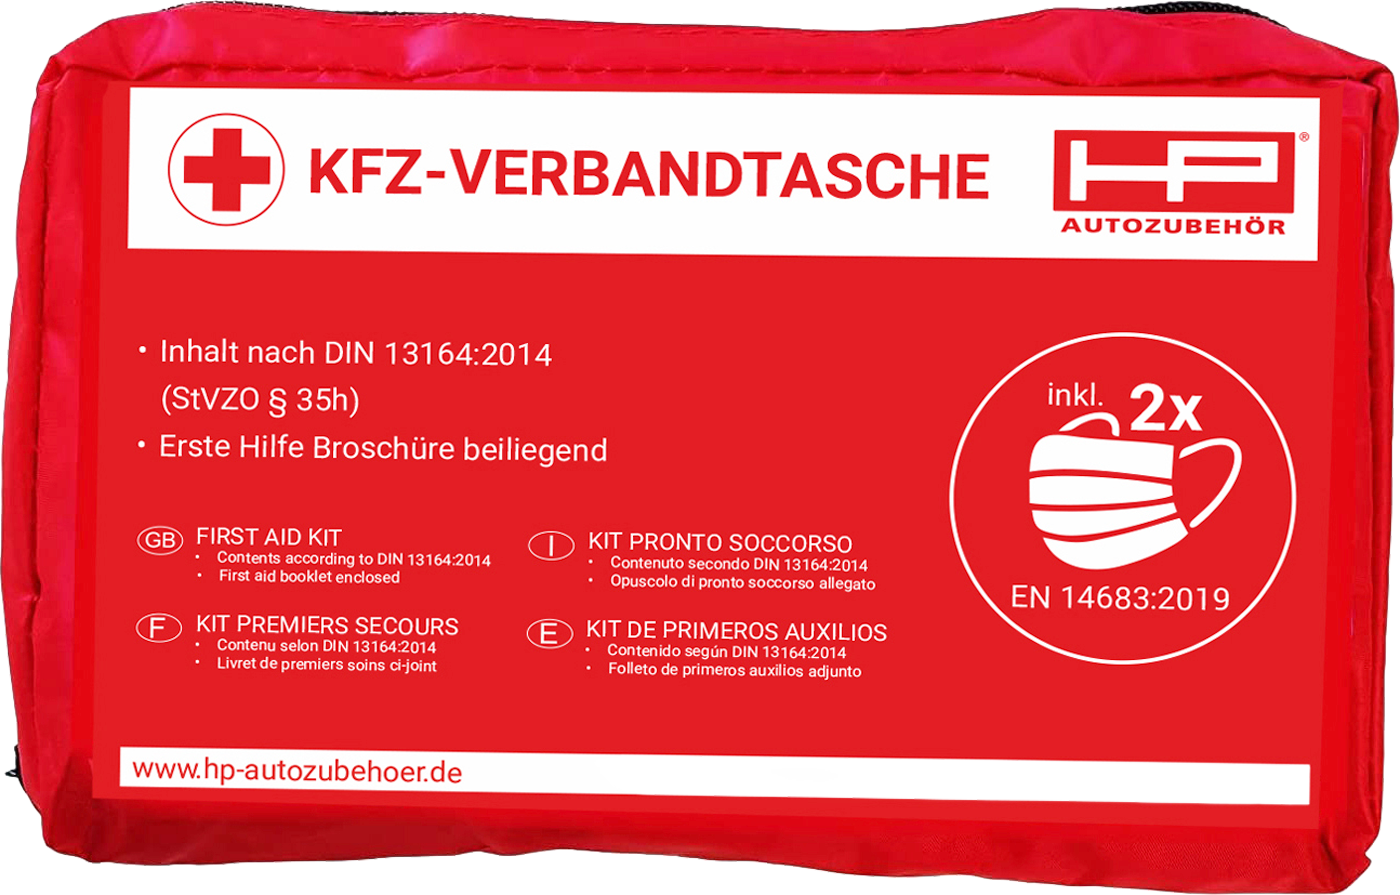 HP Autozubehör KFZ Verbandtasche inklusive 2x Mund- und Nasenschutz - Fritz  Berger Campingbedarf